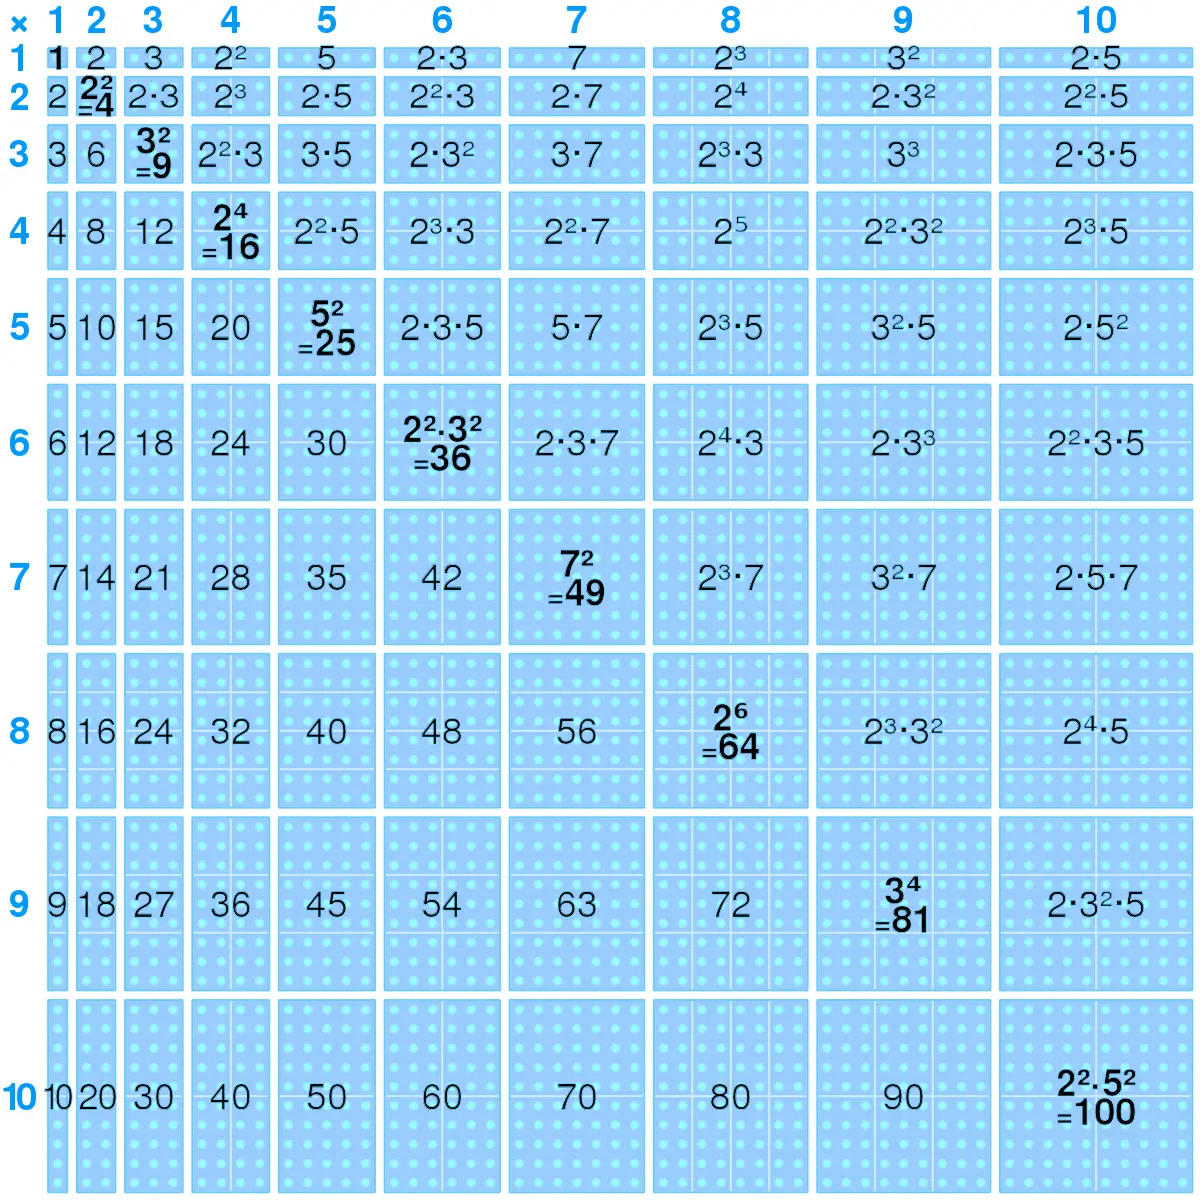 tablas multiplicar encuadernadas - Cómo se forman las tablas de multiplicar